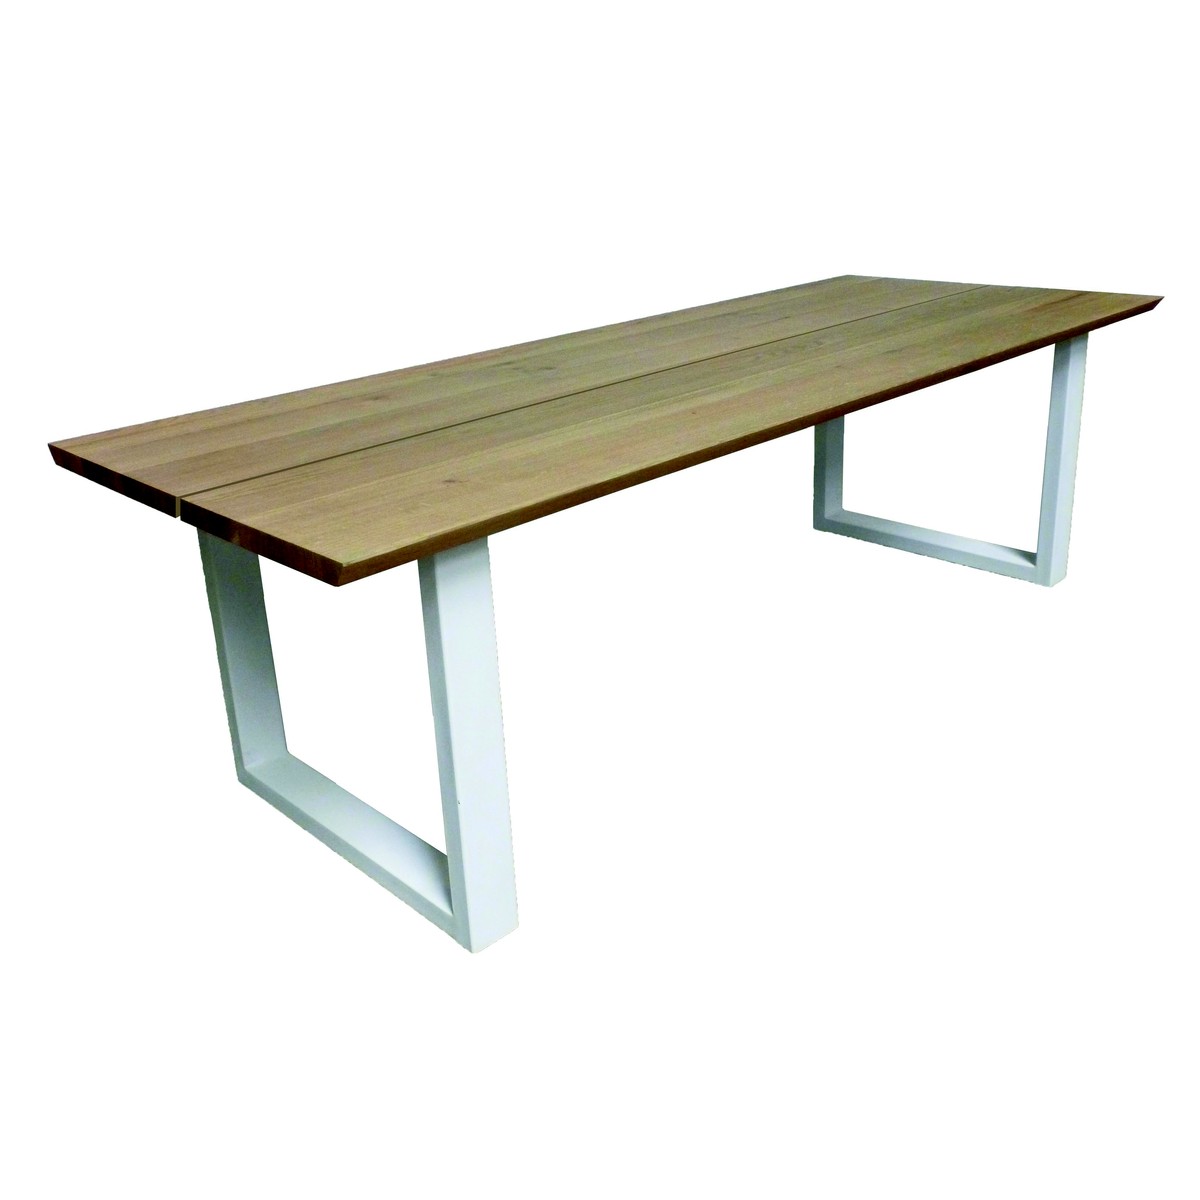   Table Lore Seven ouverte rectangulaire  160x100x77cm